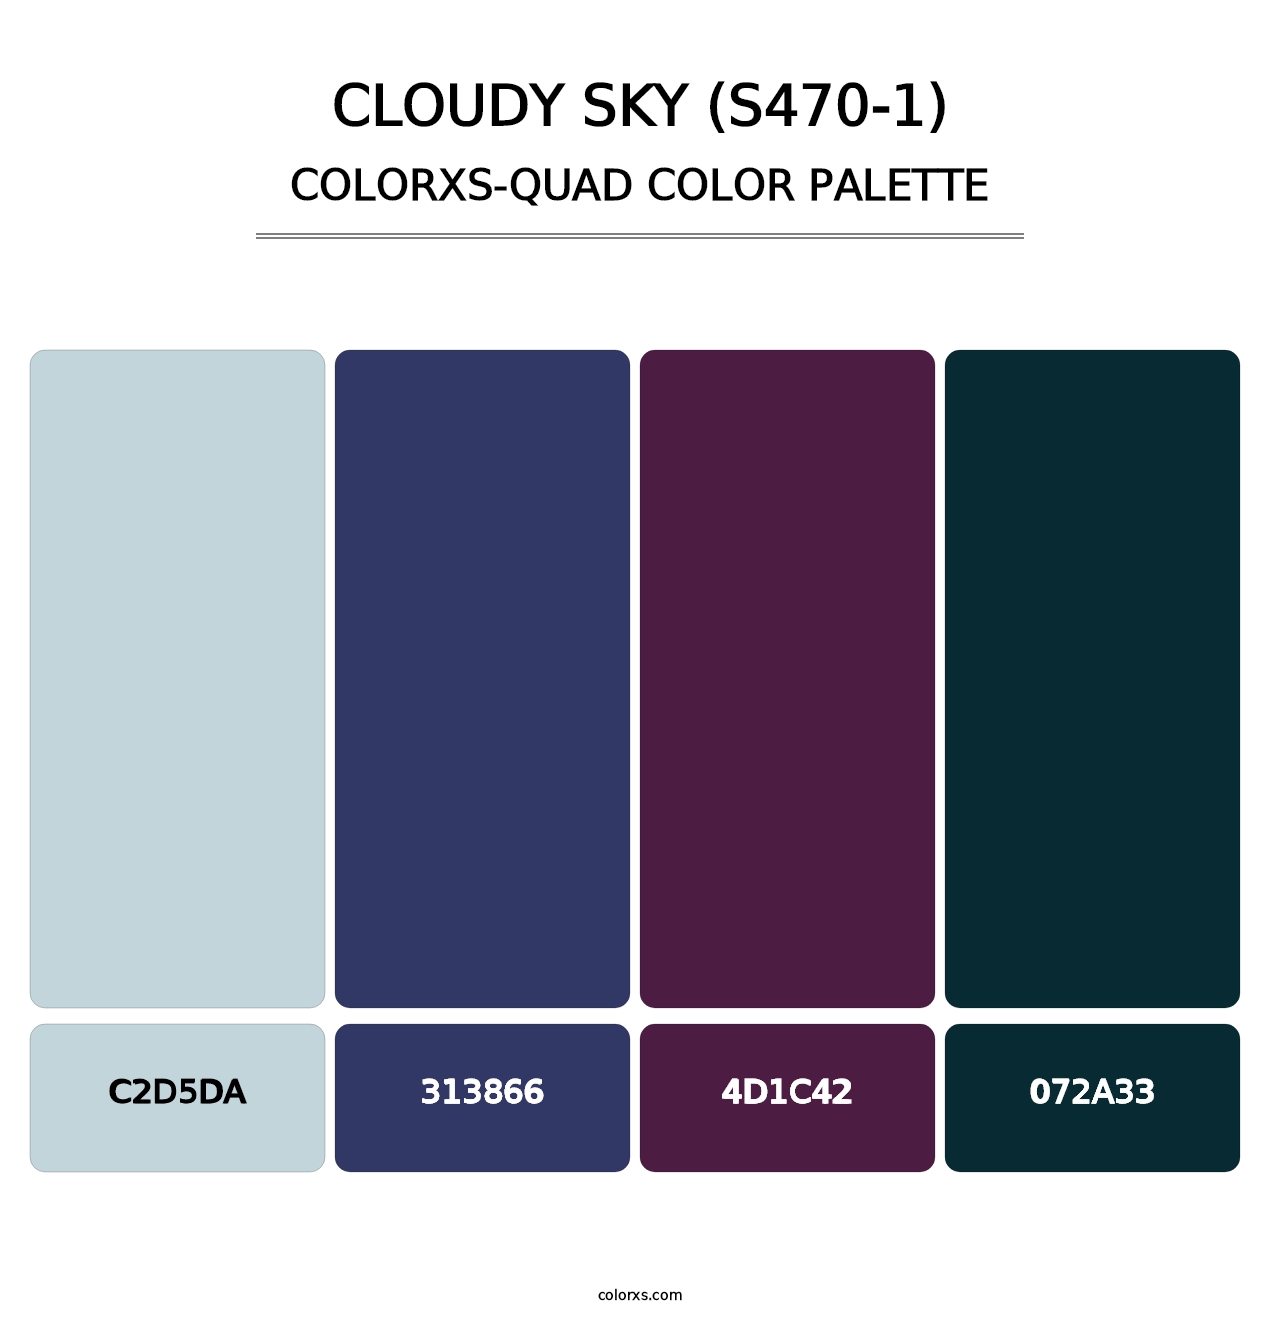 Cloudy Sky (S470-1) - Colorxs Quad Palette